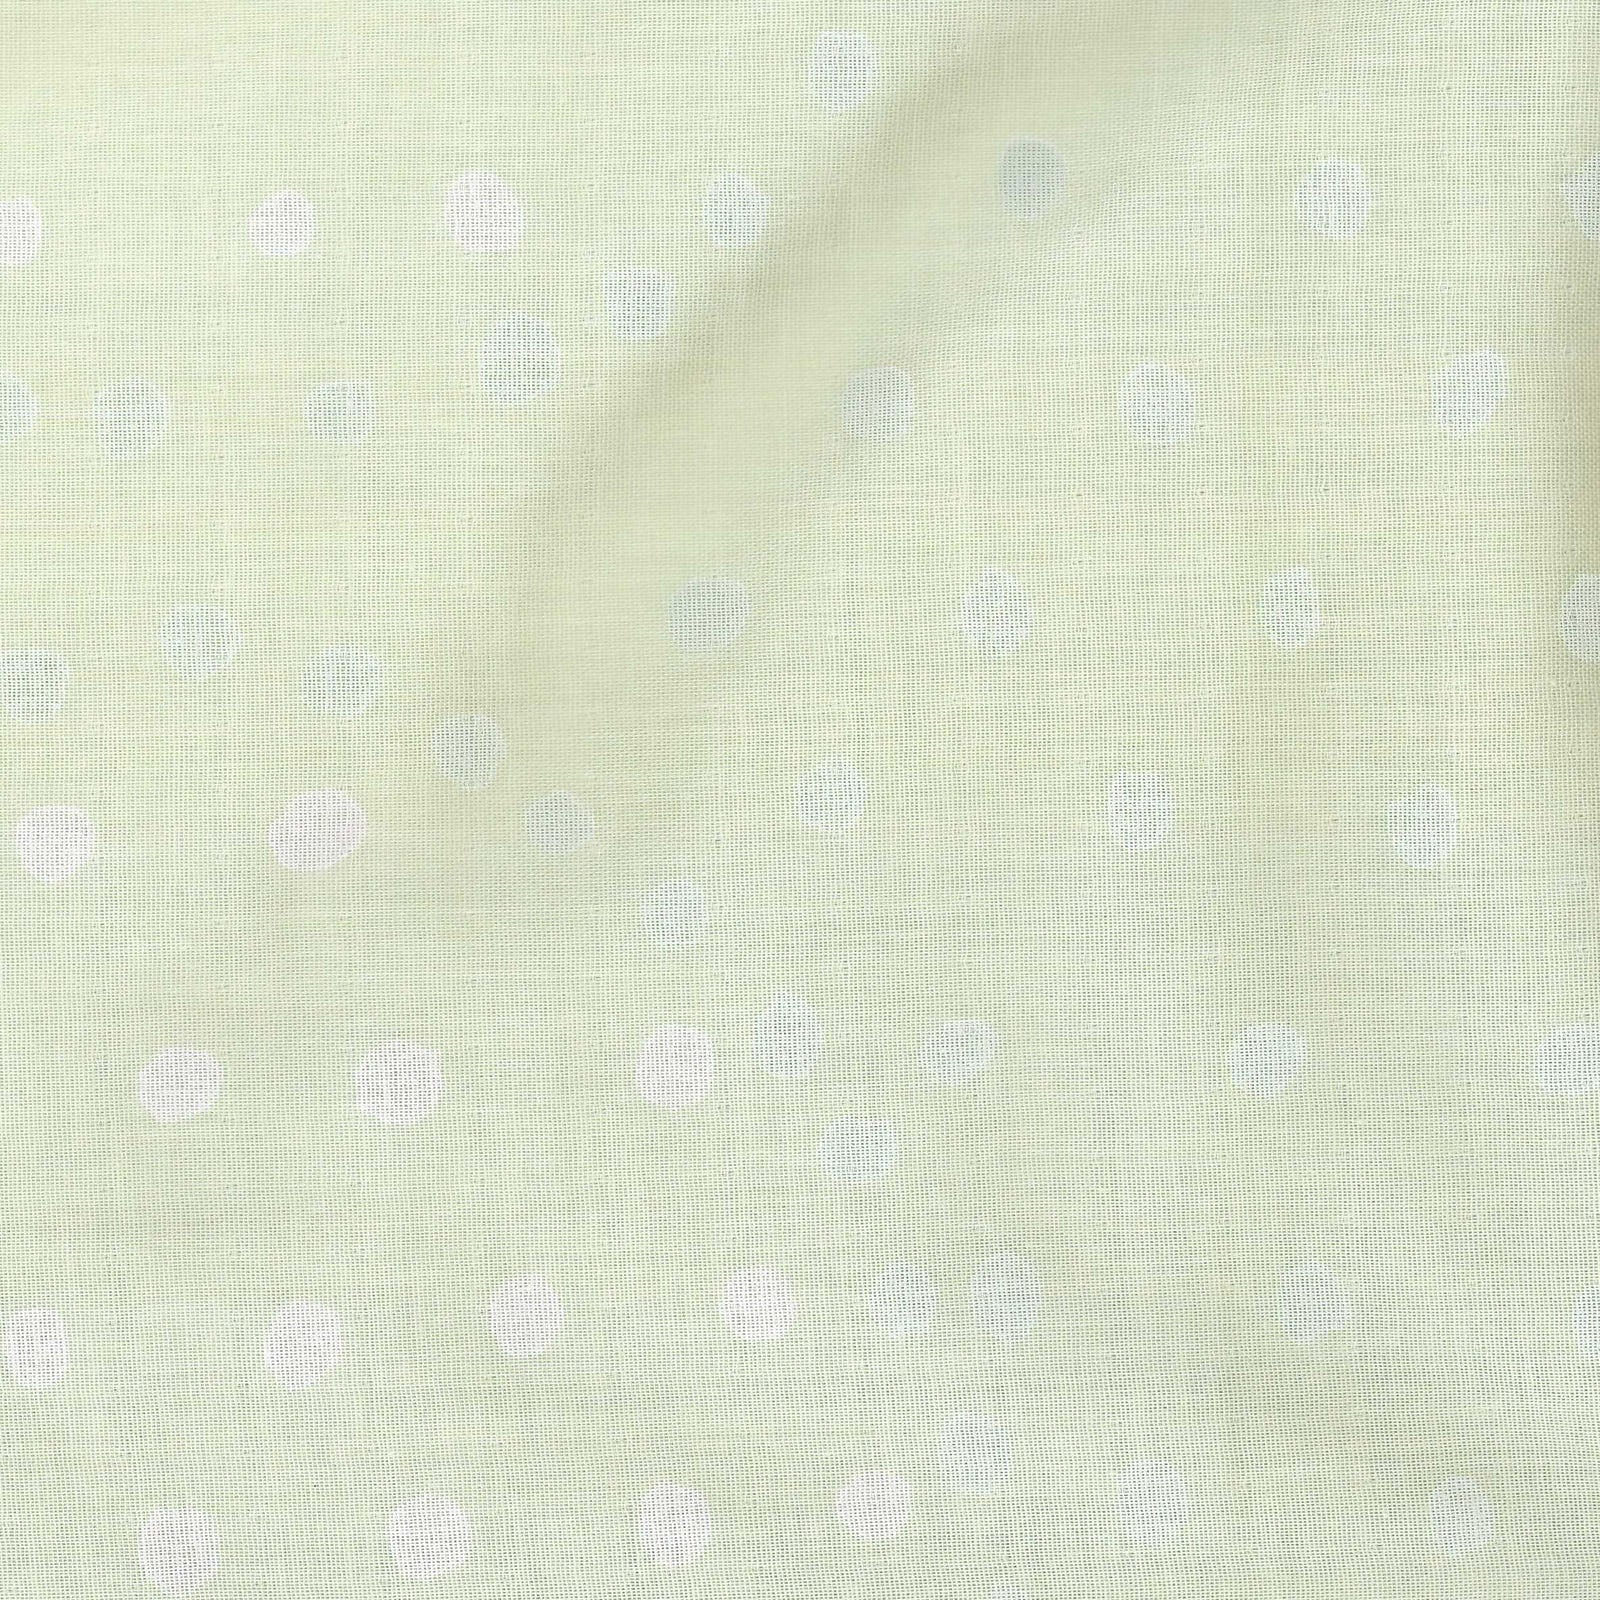 Nani IRO Ympari Pocho in Green - Hatsukusa - Color C | Double Gauze